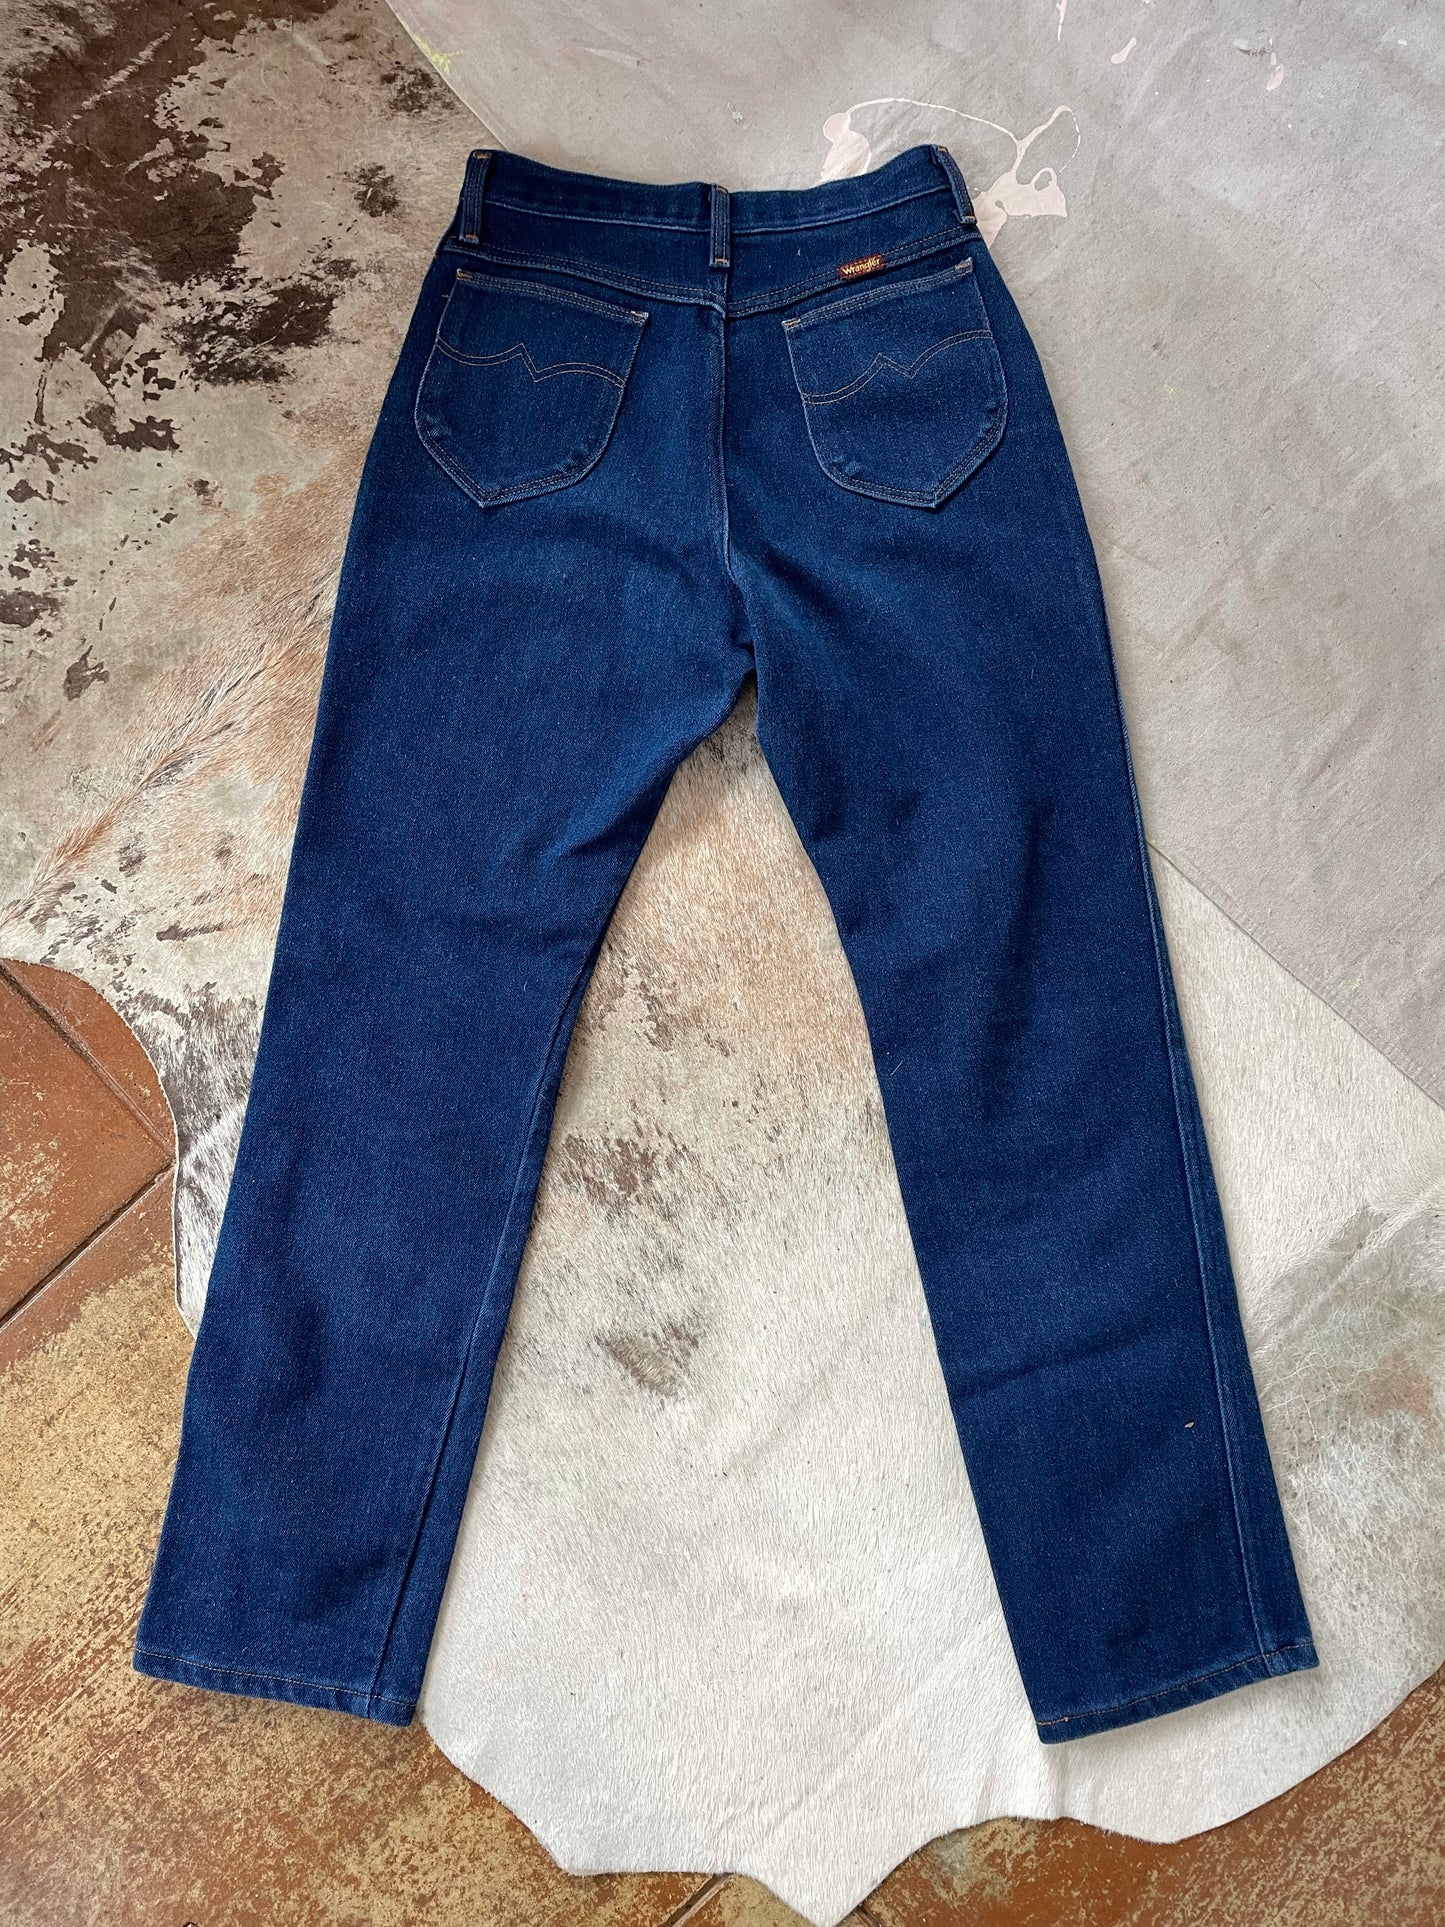 70s/80s Wrangler Jeans